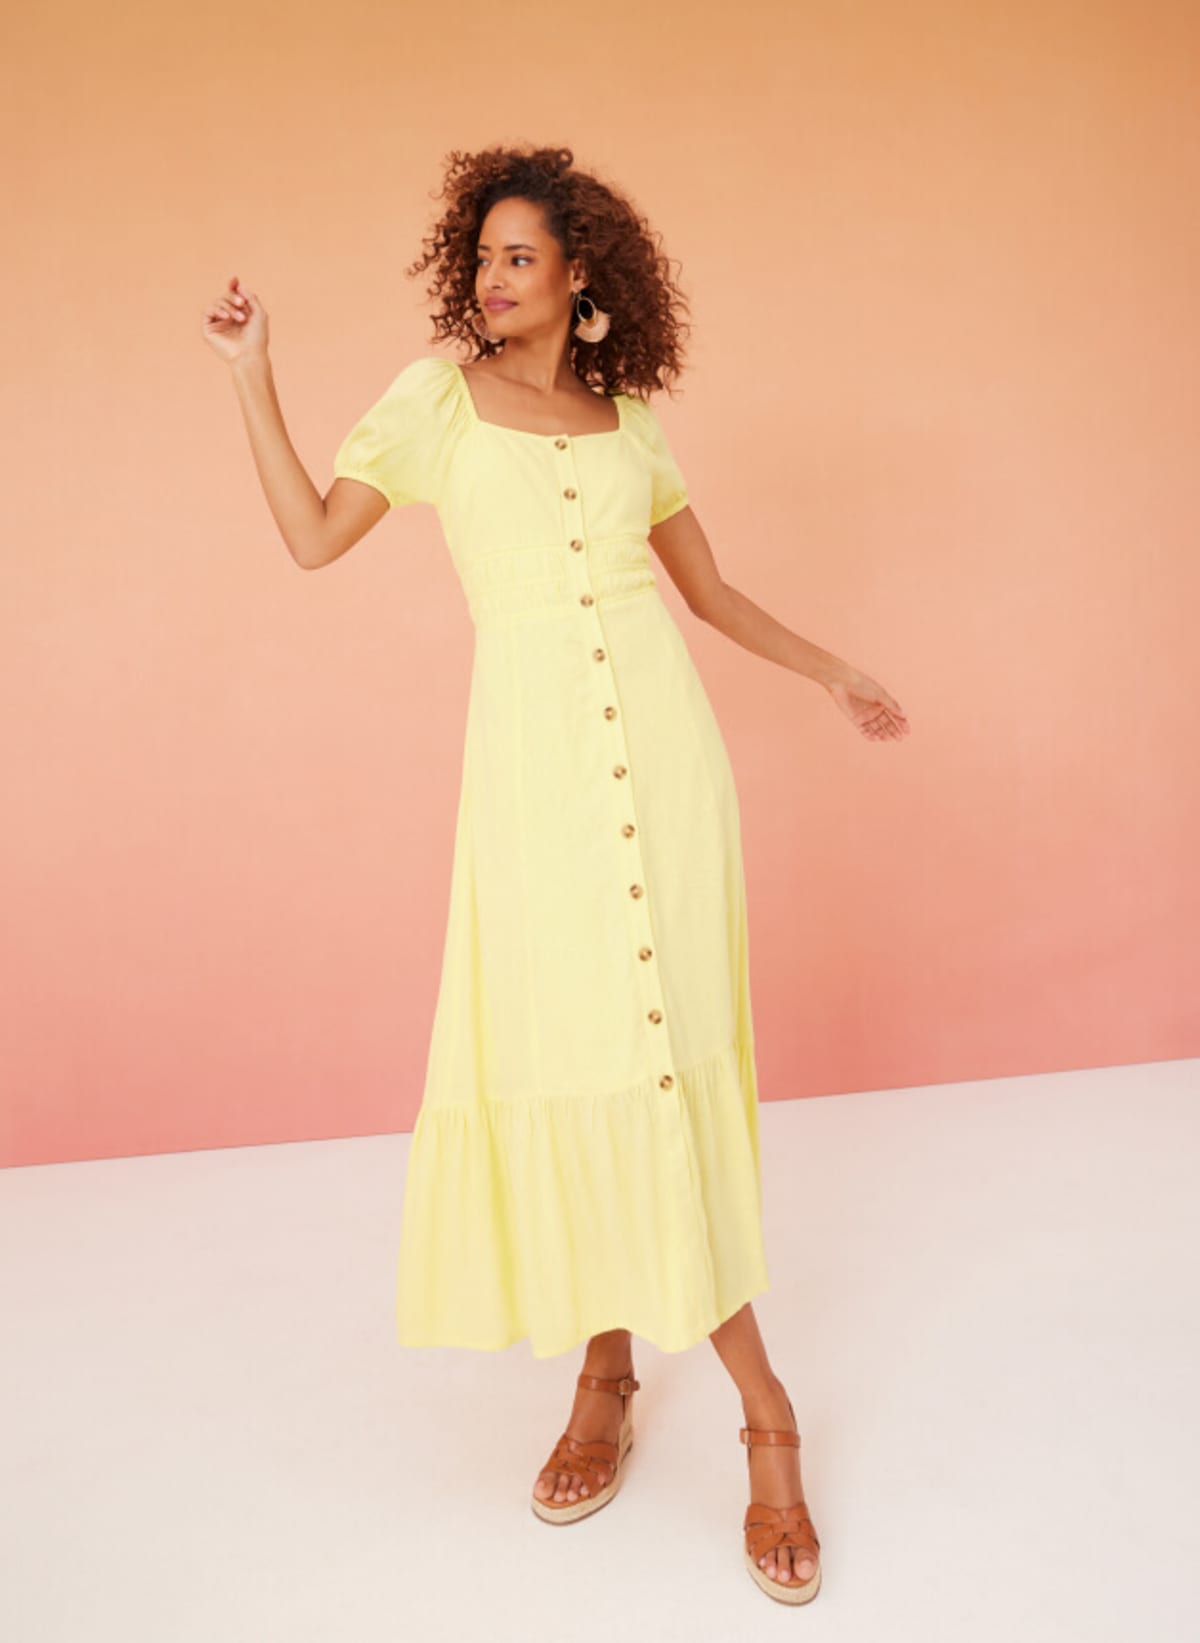 Woman wearing yellow dress